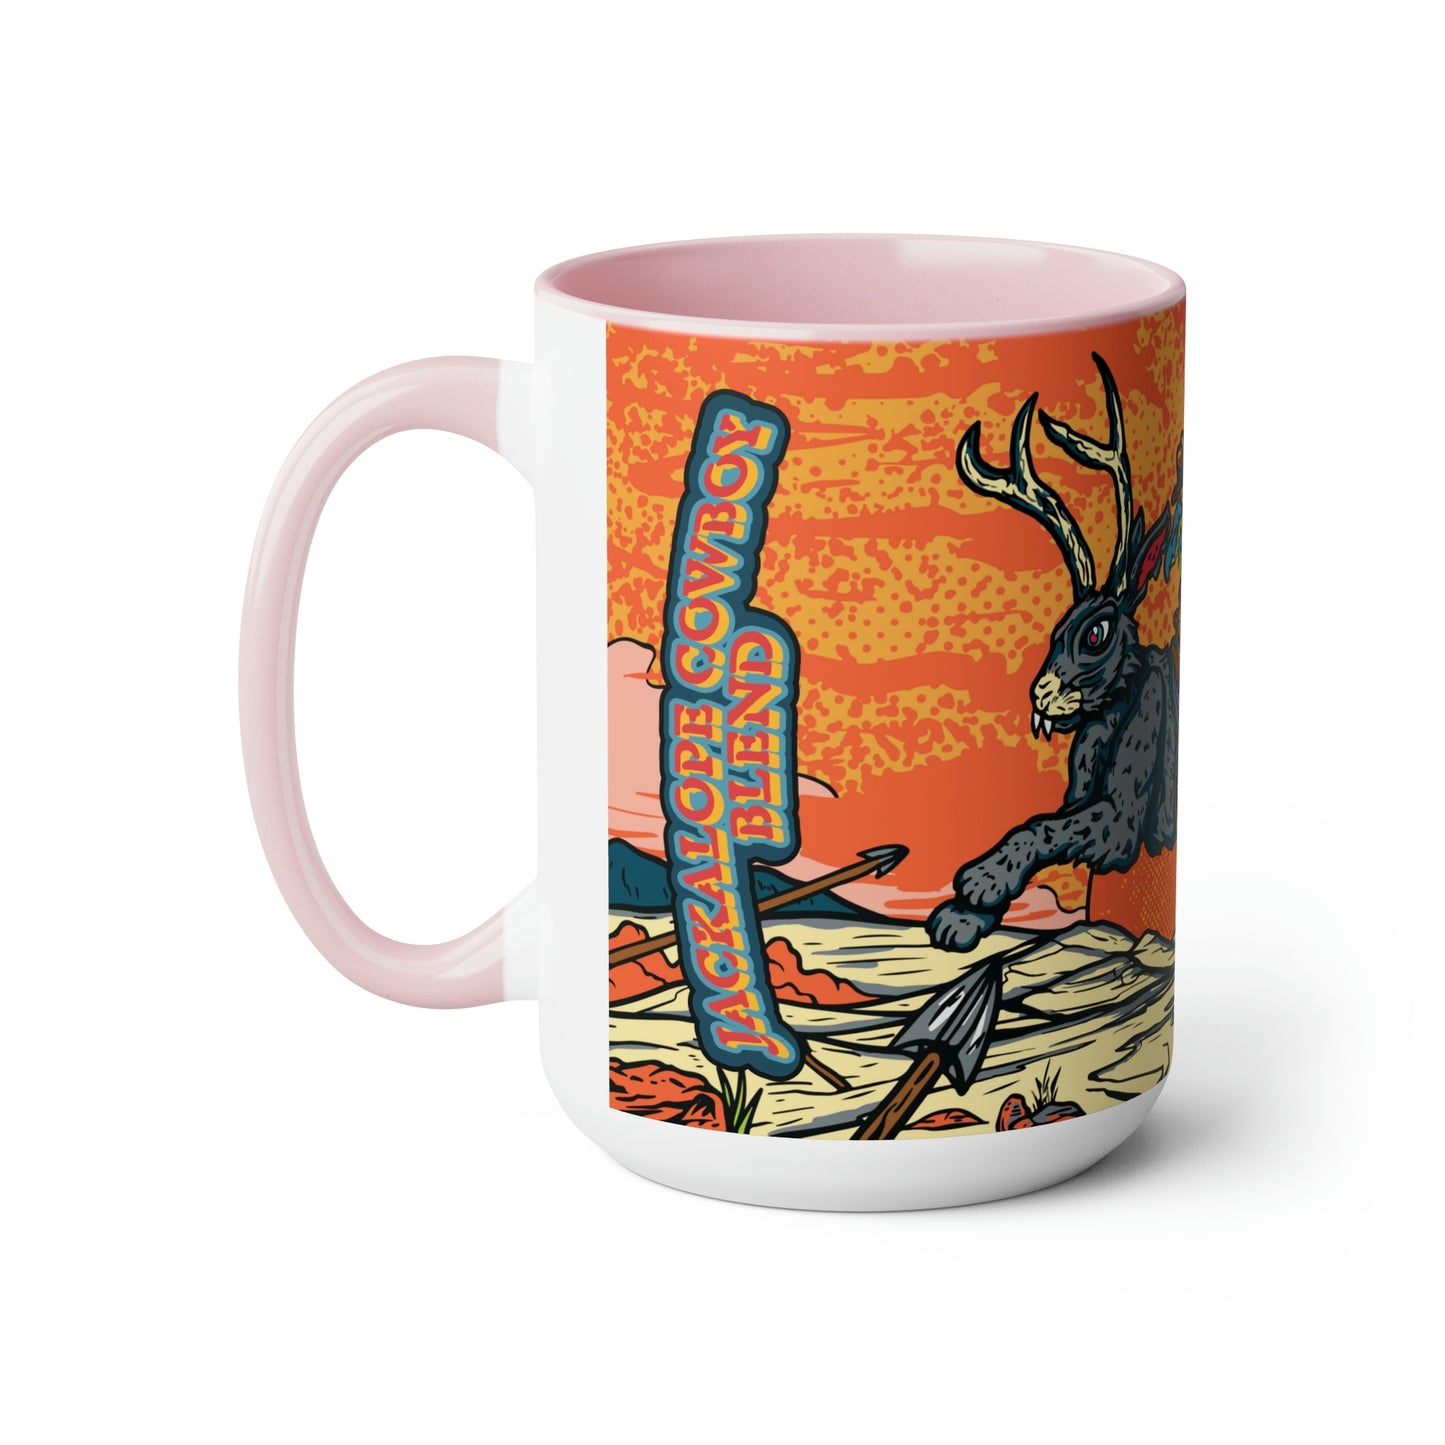 Jackalope Mythic Mug